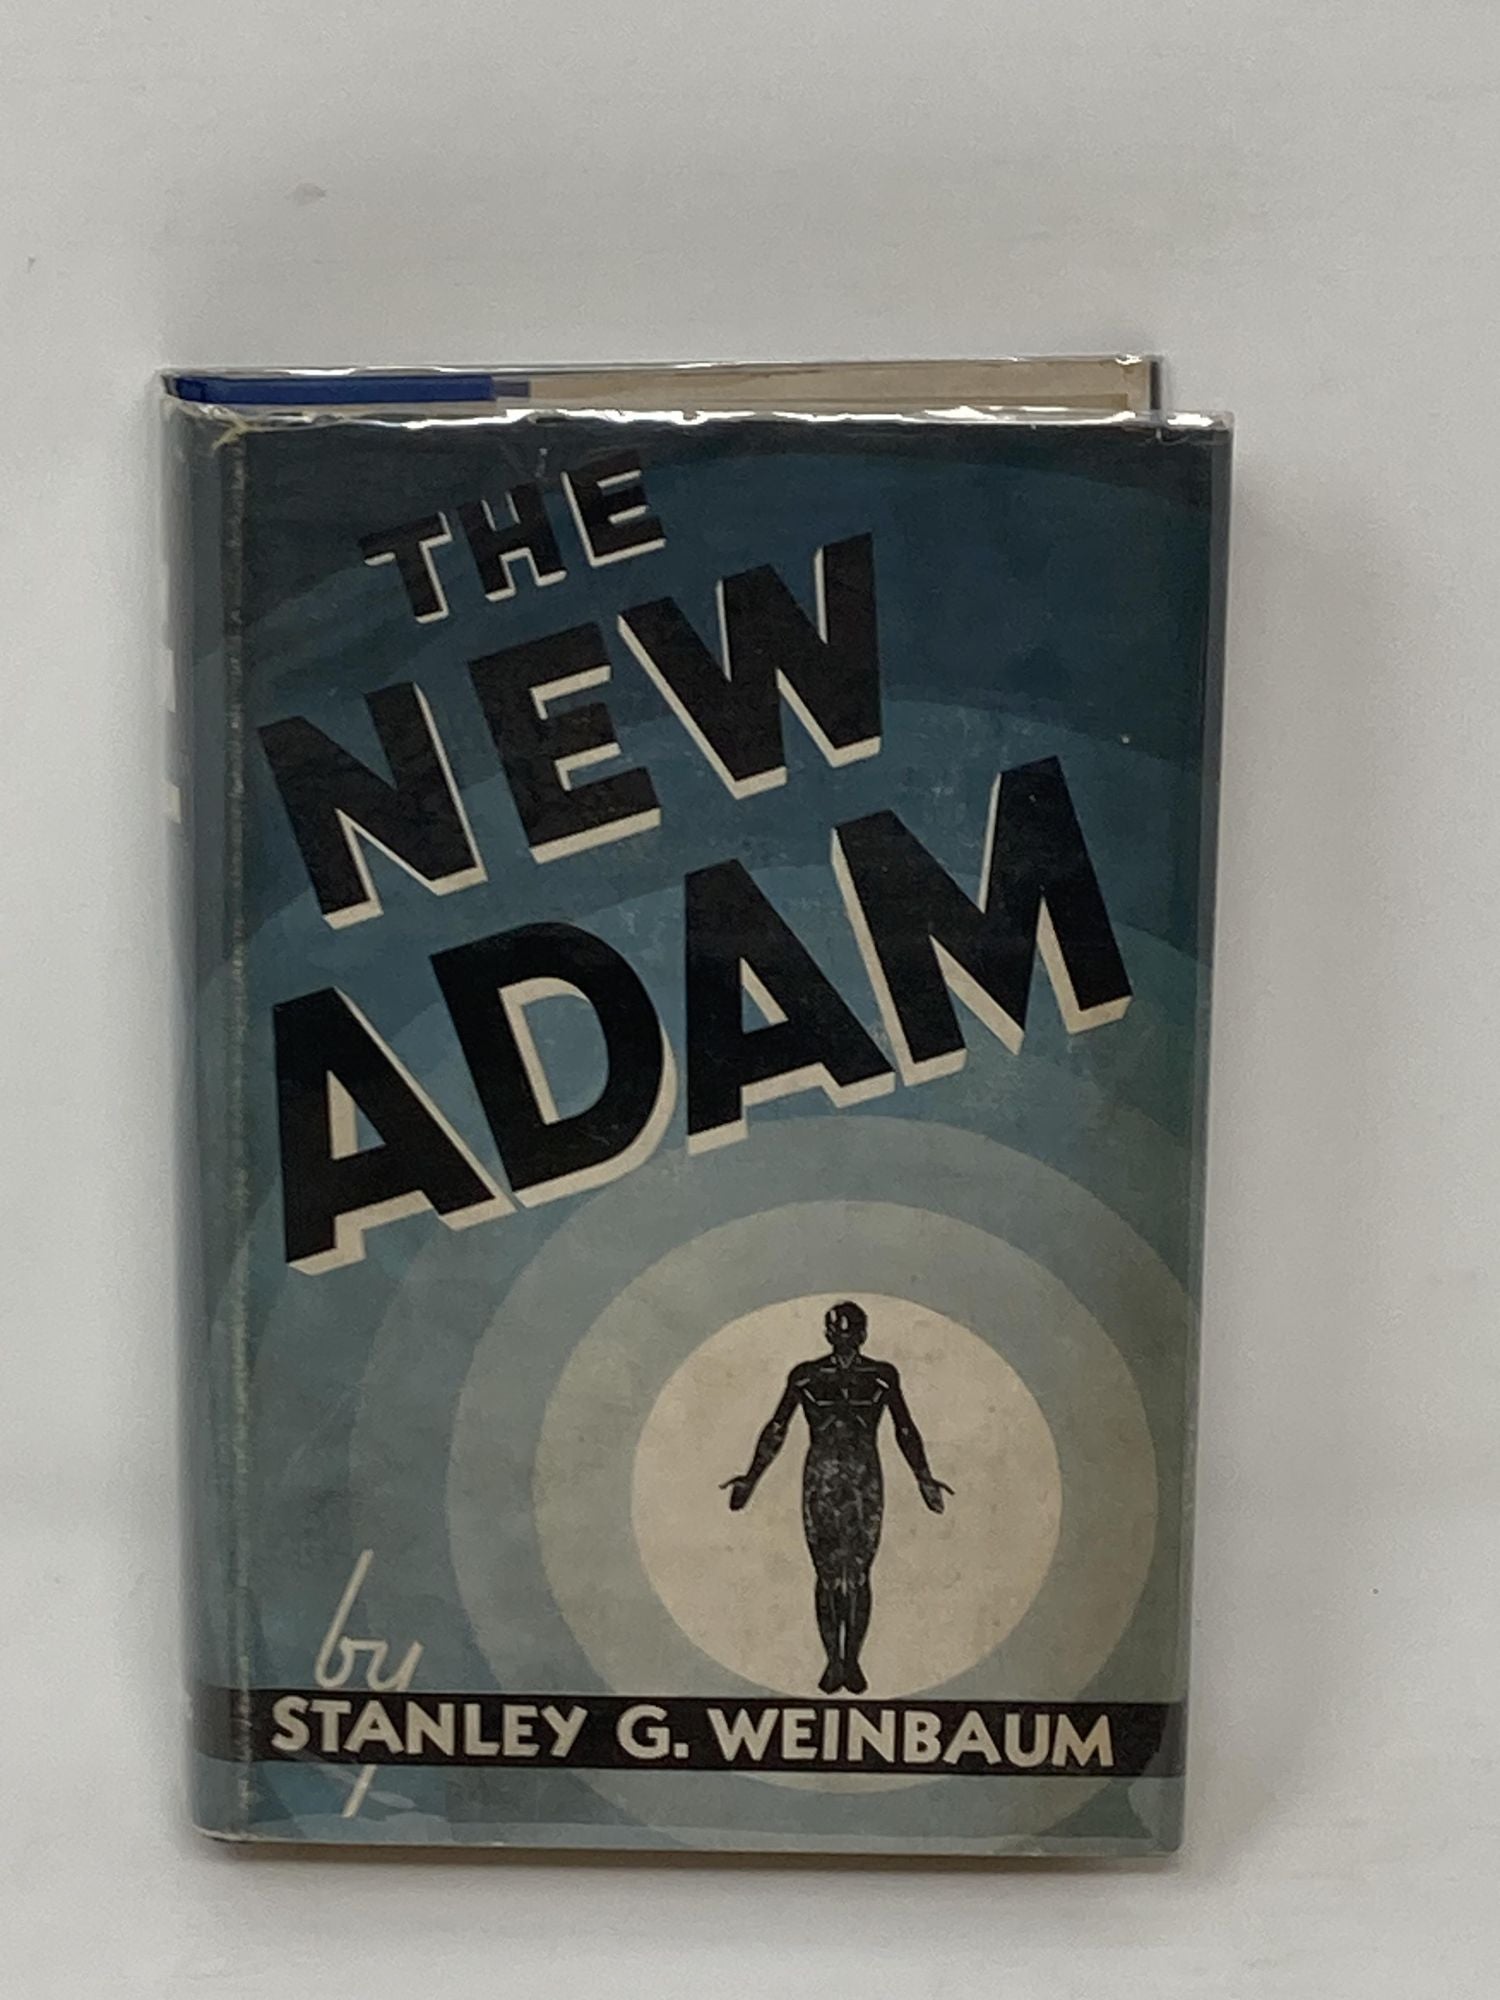 Weinbaum, Stanley G. - The New Adam